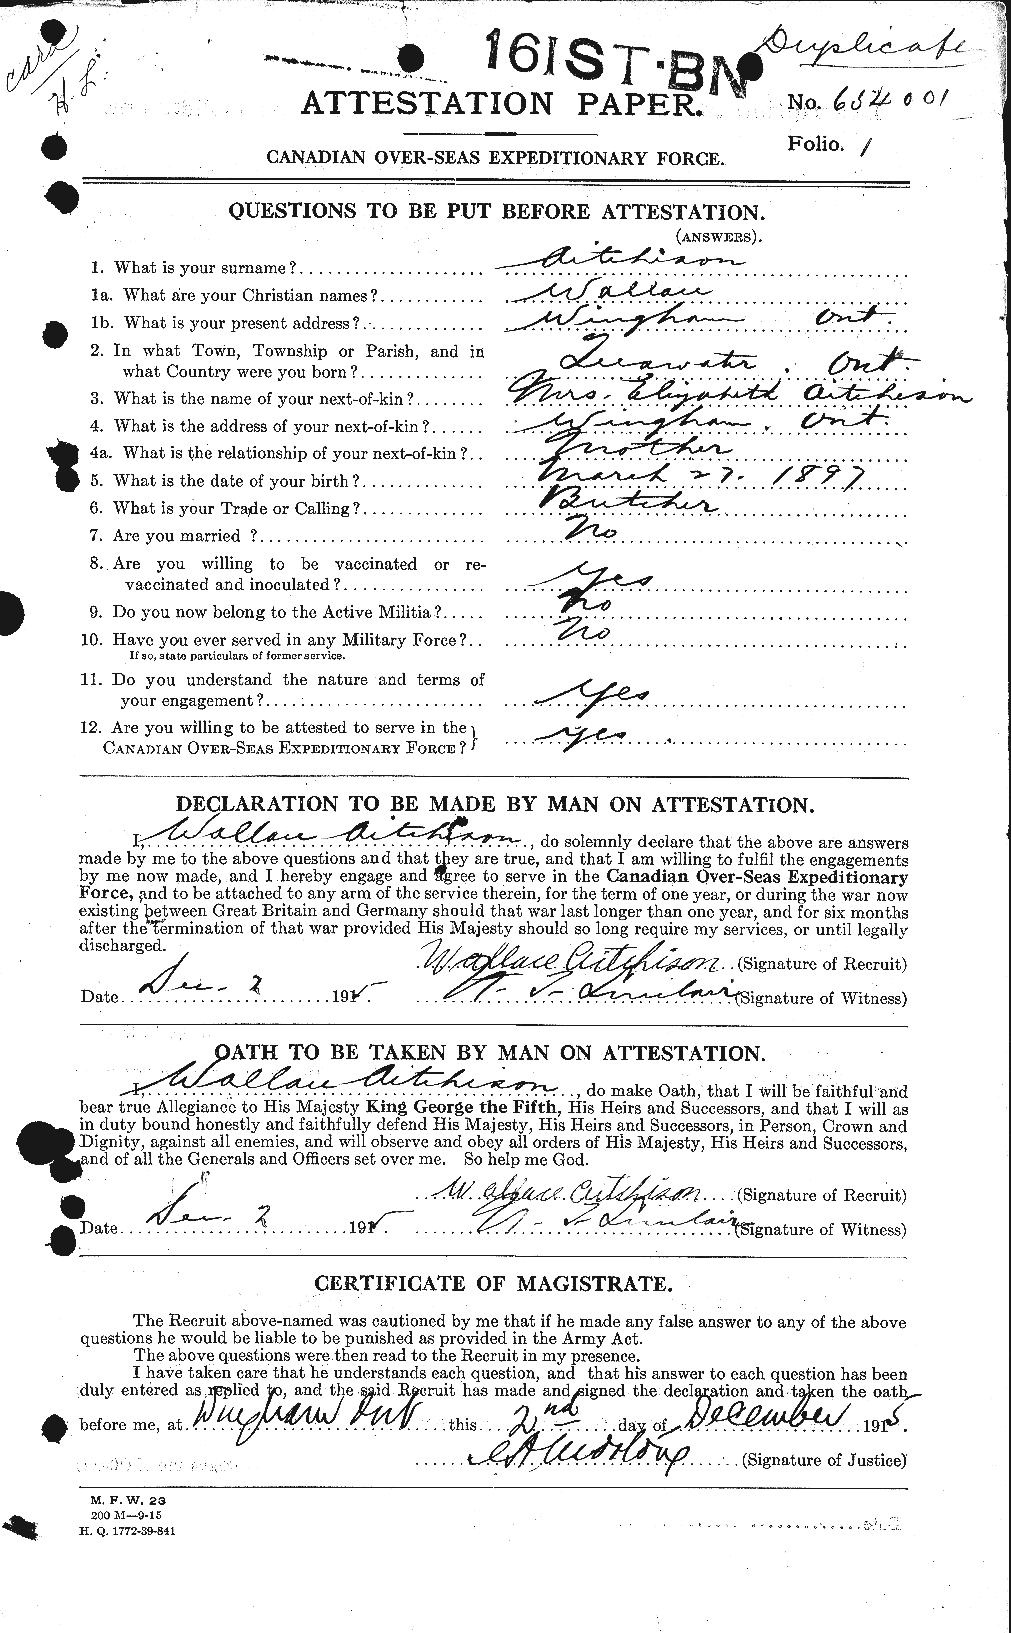 Dossiers du Personnel de la Première Guerre mondiale - CEC 203318a